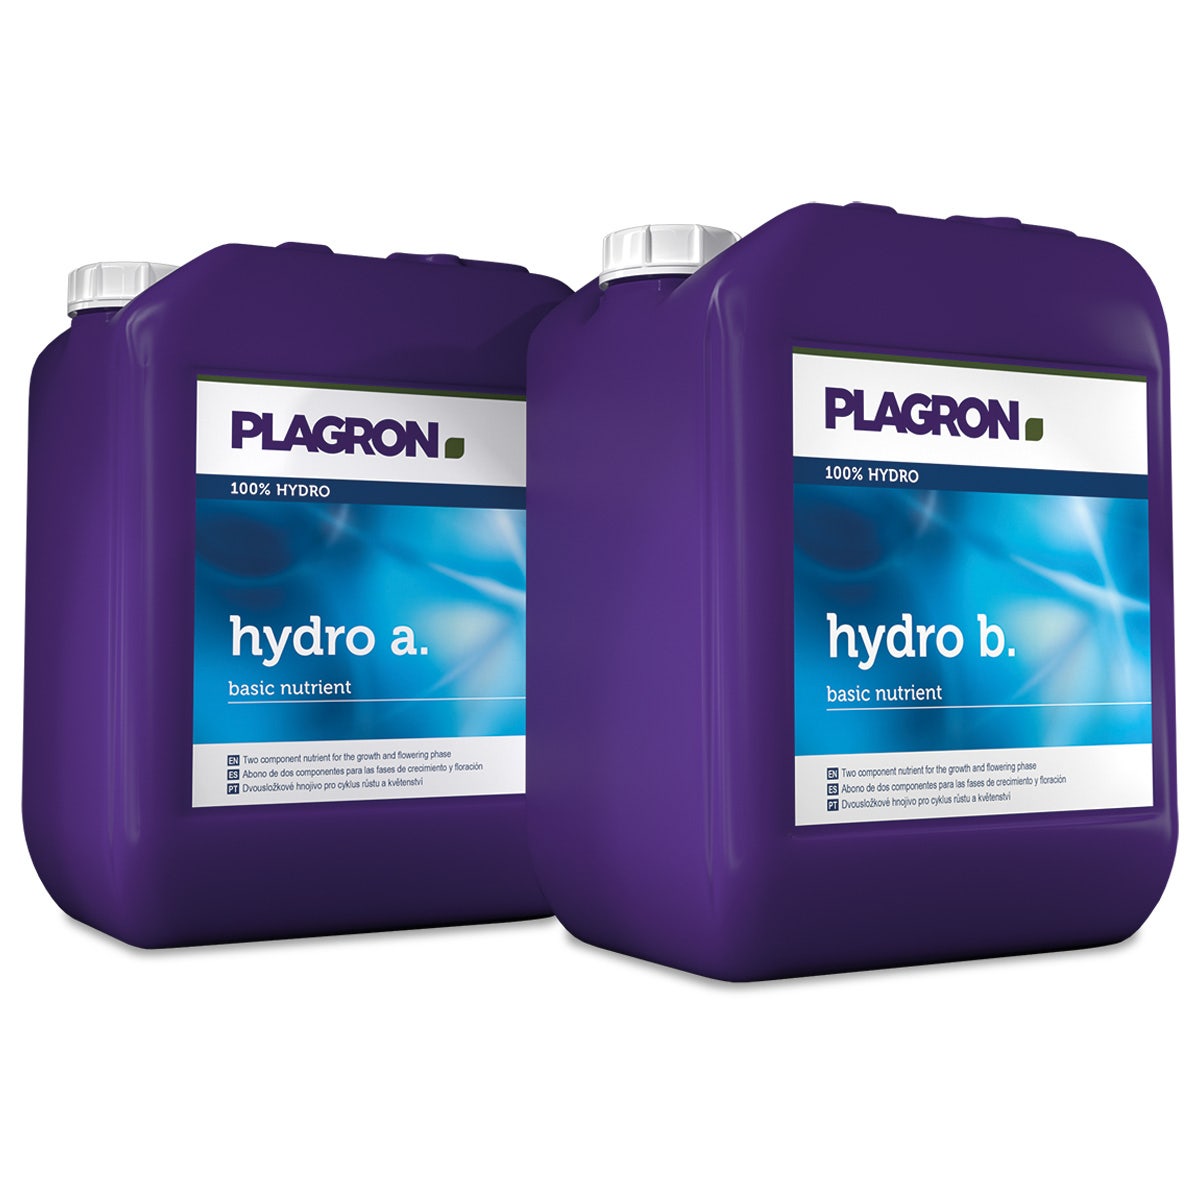 Plagron Nutrients - Hydro A&B